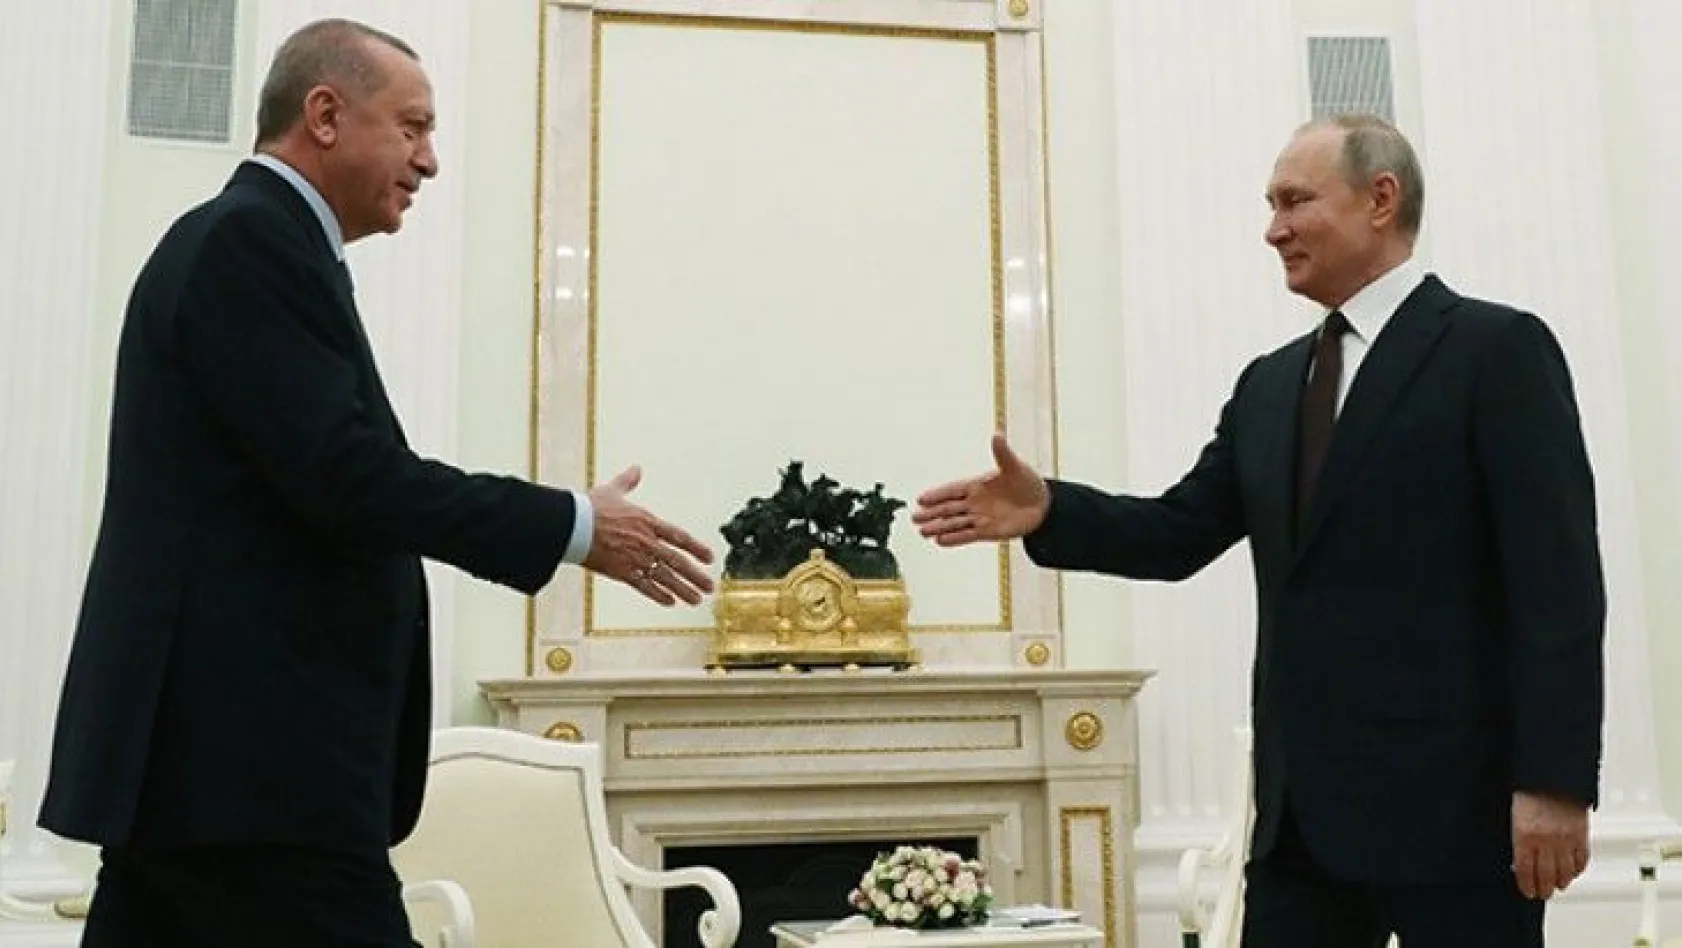 Cumhurbaşkanı Erdoğan ve Putin arasında önemli görüşme